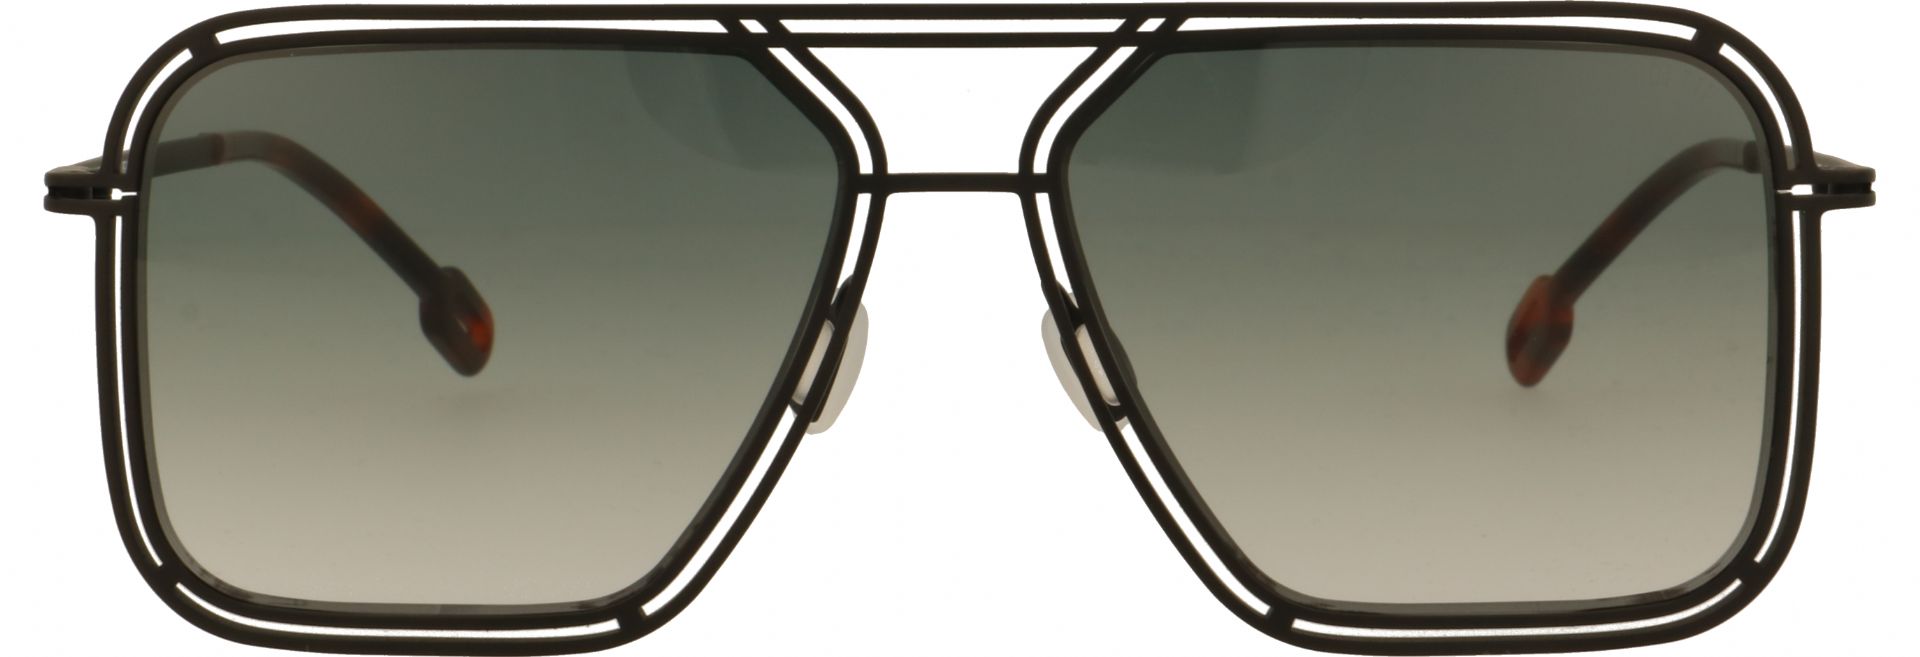 Odette lunettes Preston M102